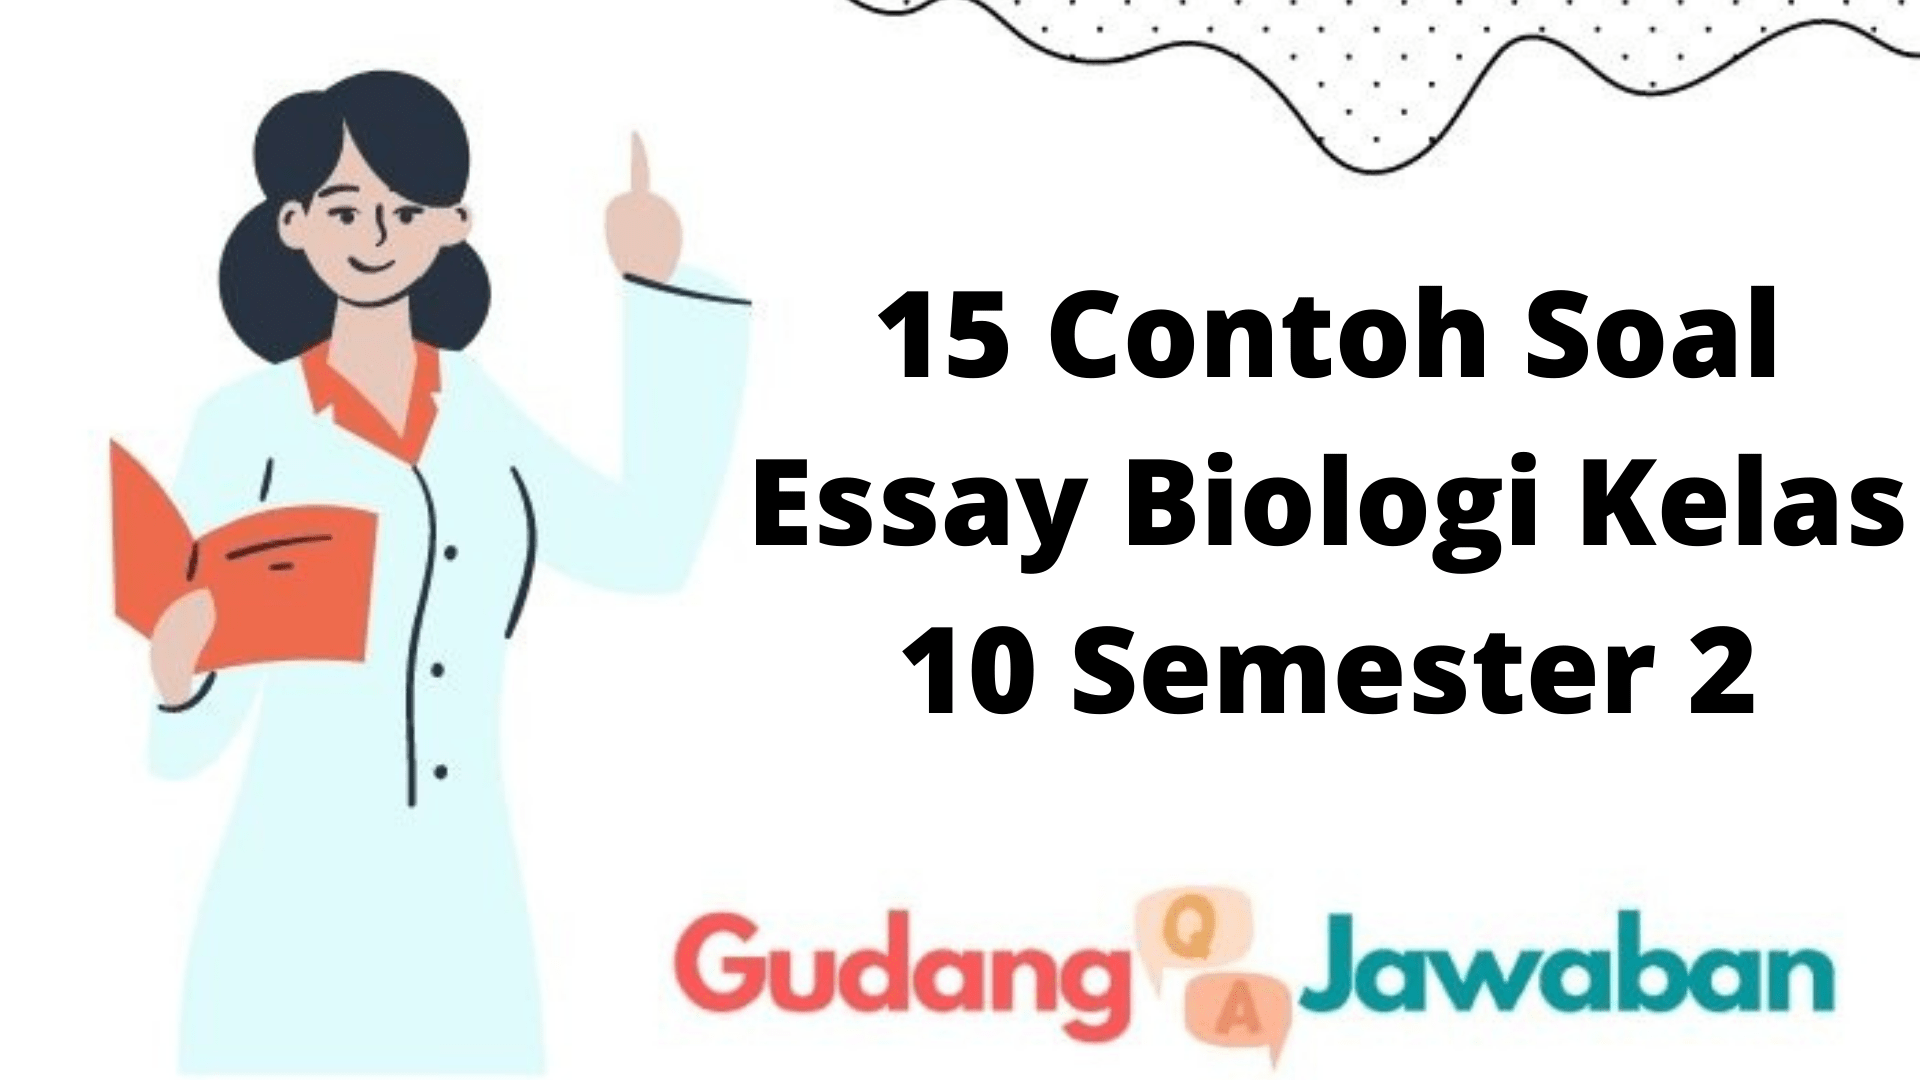 15 Contoh Soal Essay Biologi Kelas 10 Semester 2